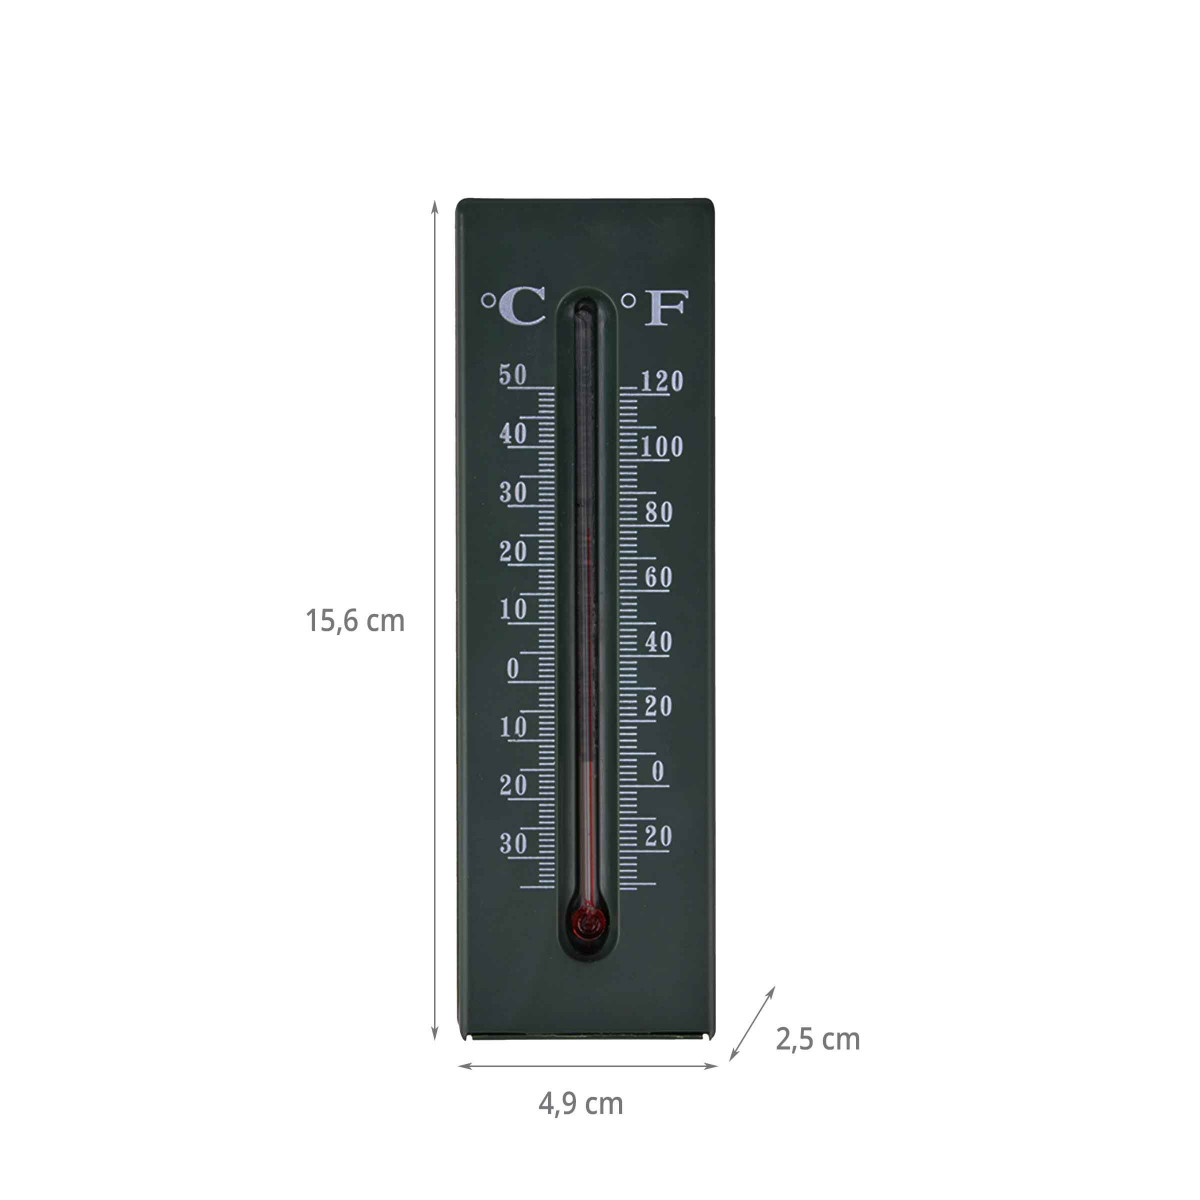 Thermomètre décoratif pour cacher une clé – Rangement secret caché